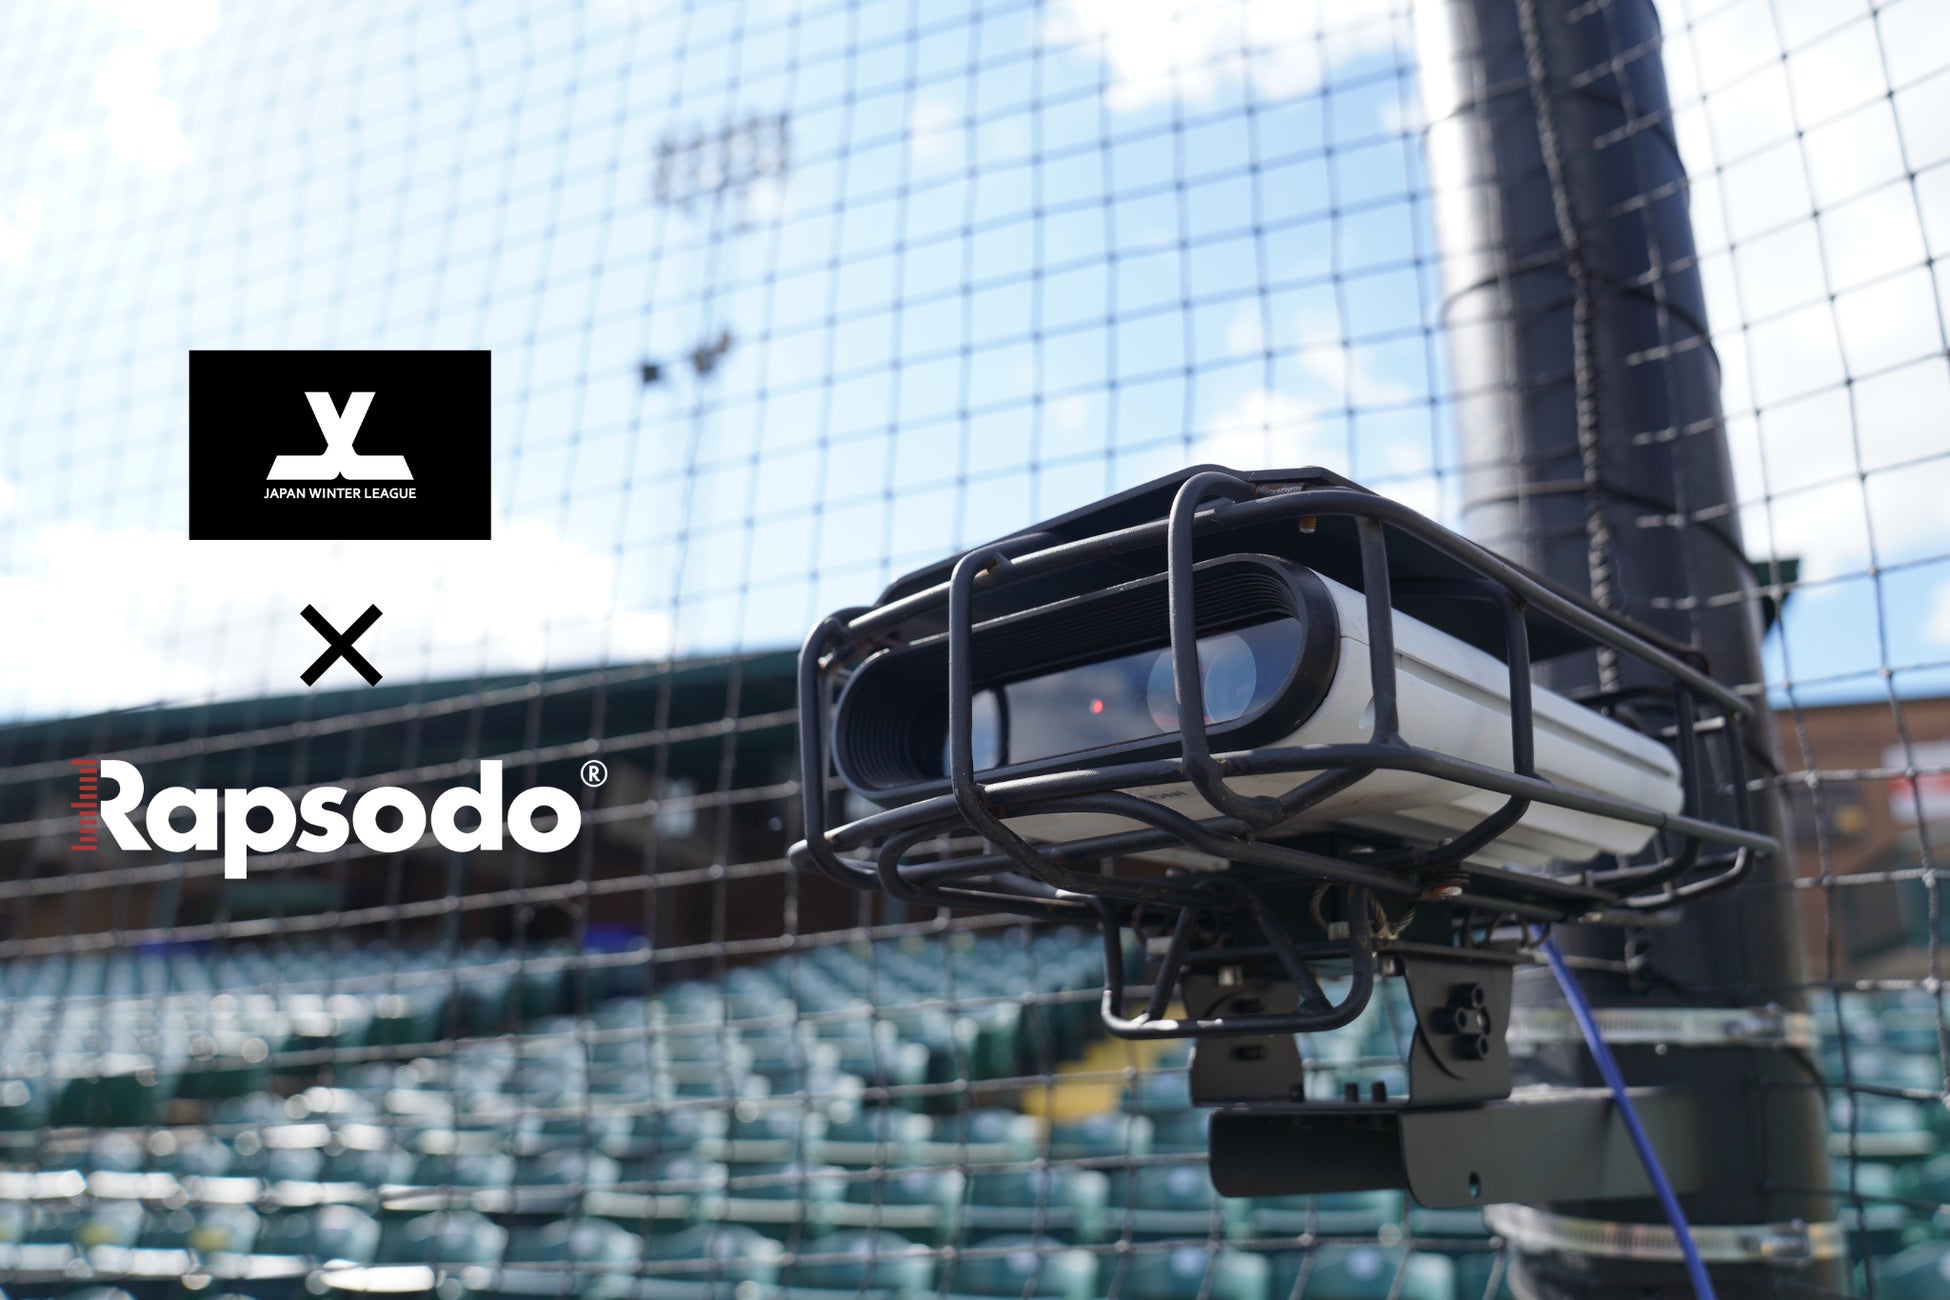 野球の弾道測定分析機器・ラプソード、11月24日に開幕するジャパンウィンターリーグ全44試合にて球場設置型デバイス「Rapsodo Stadium」の実証テストを実施